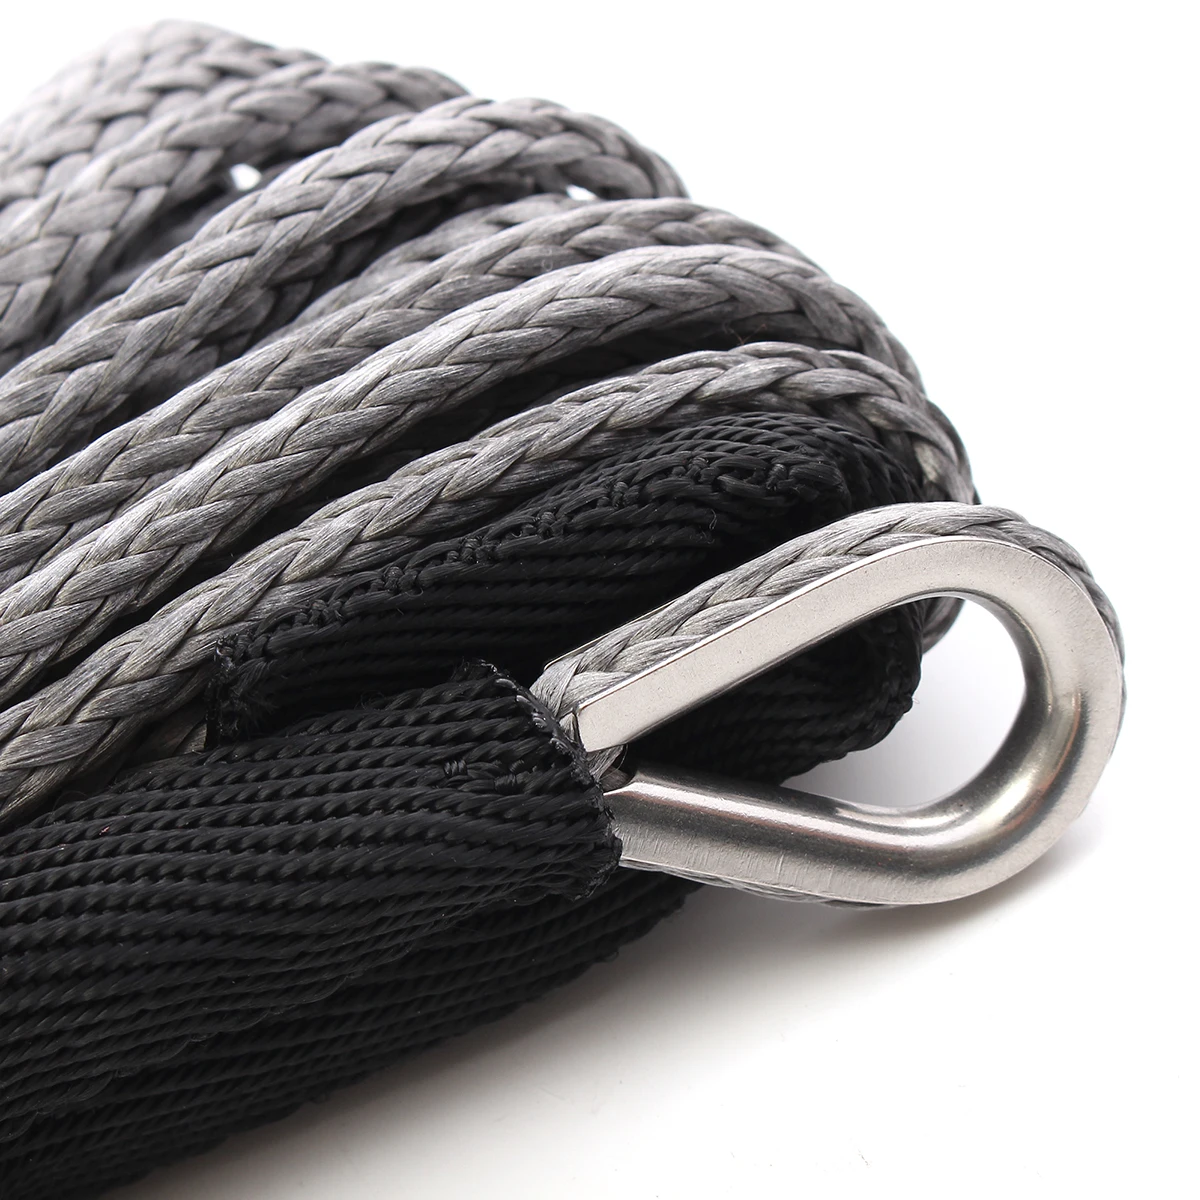 Веревка для лебедки с оболочкой серый синтетический трос троса 15 м 7700LBs веревка